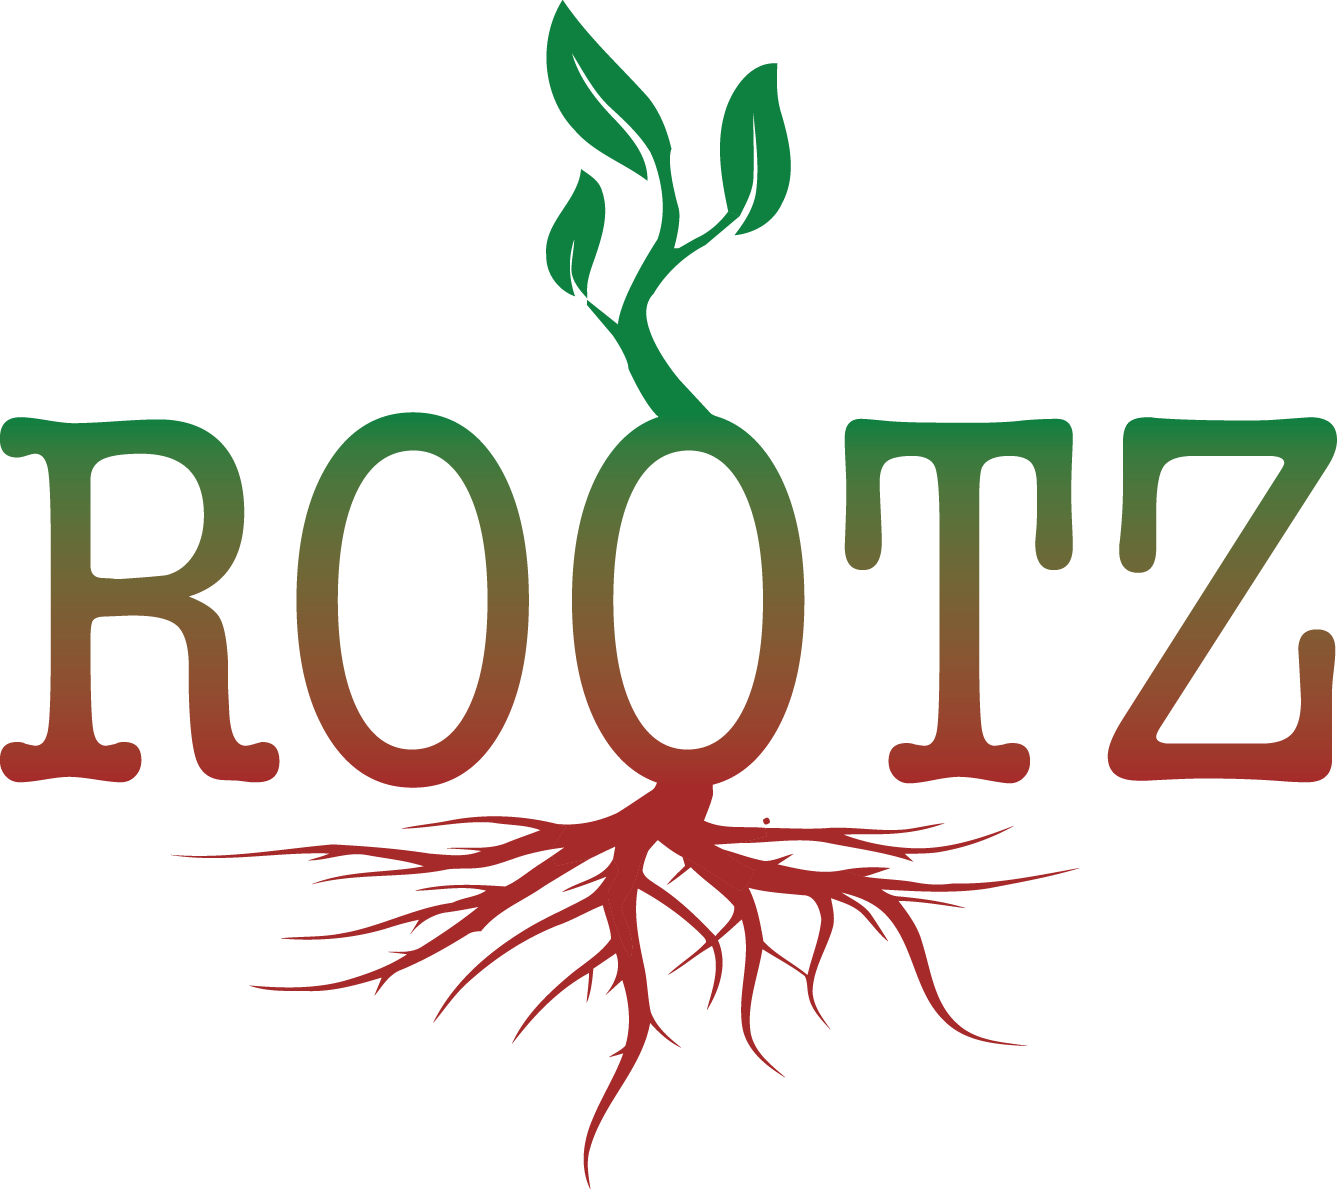 Rootz Soul Cafe